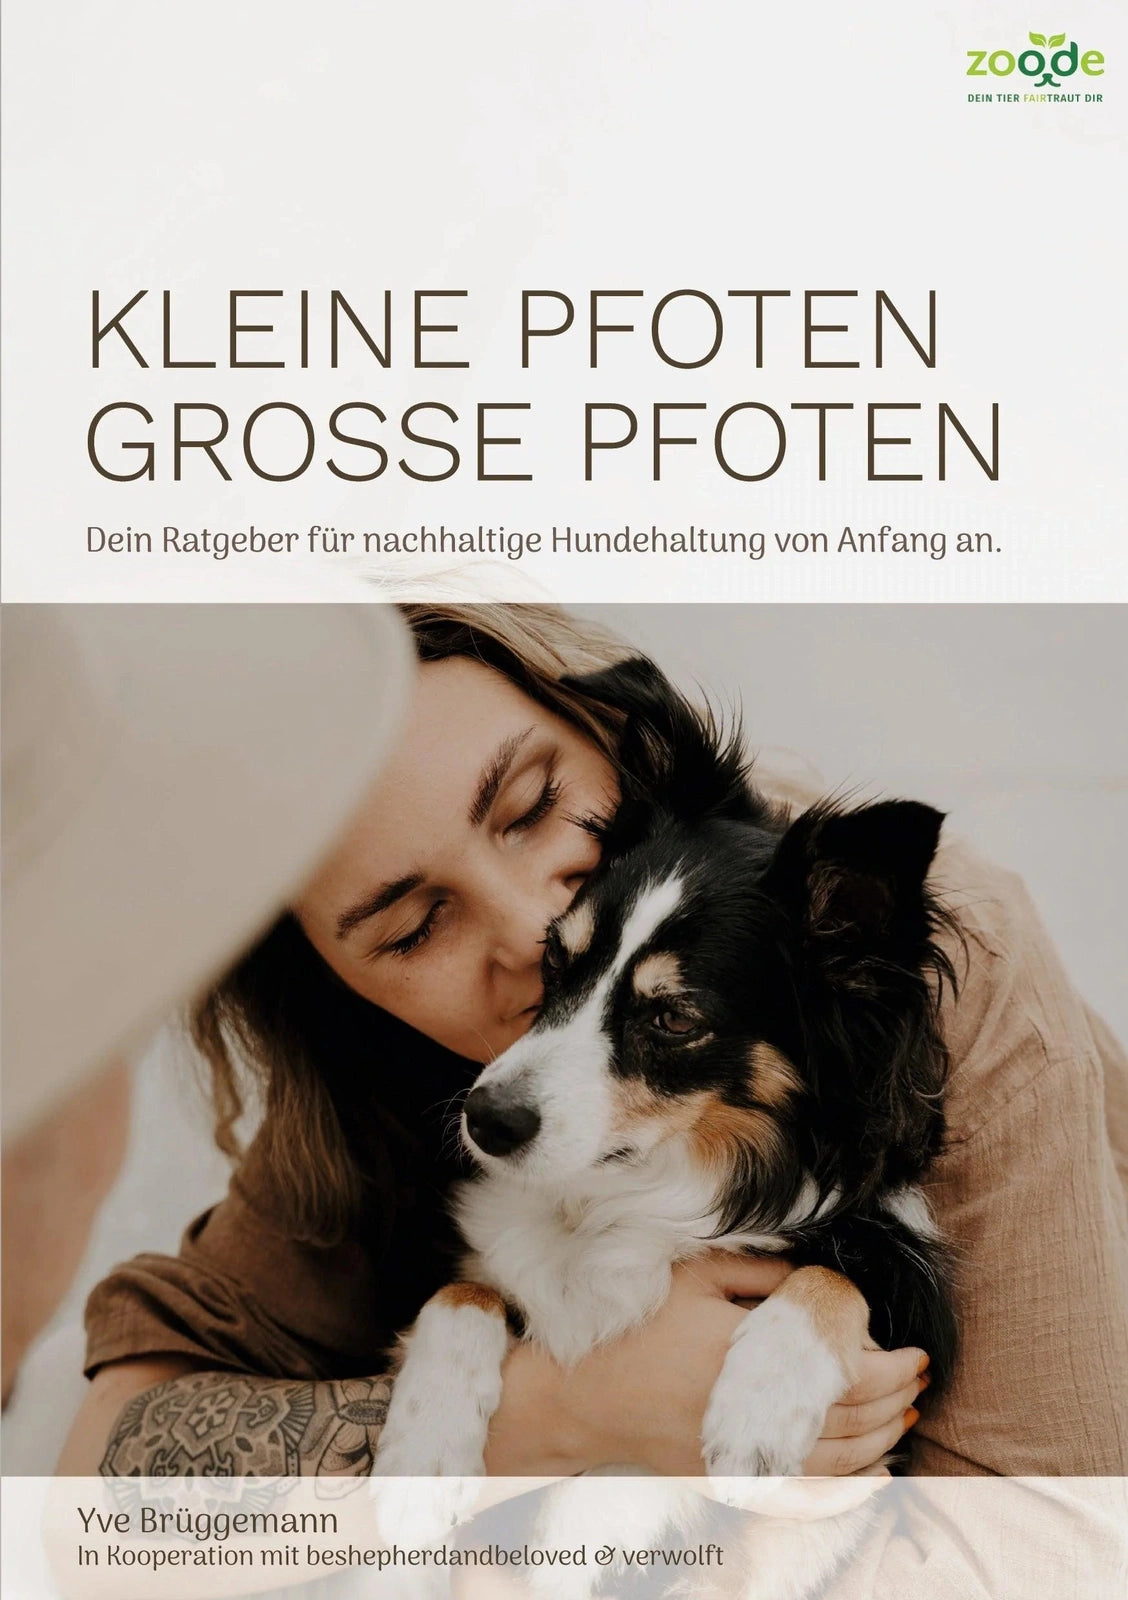 Artikel mit dem Namen Kleine Pfoten, Große Pfoten - Hunderatgeber (Taschenbuch) im Shop von zoo.de , dem Onlineshop für nachhaltiges Hundefutter und Katzenfutter.